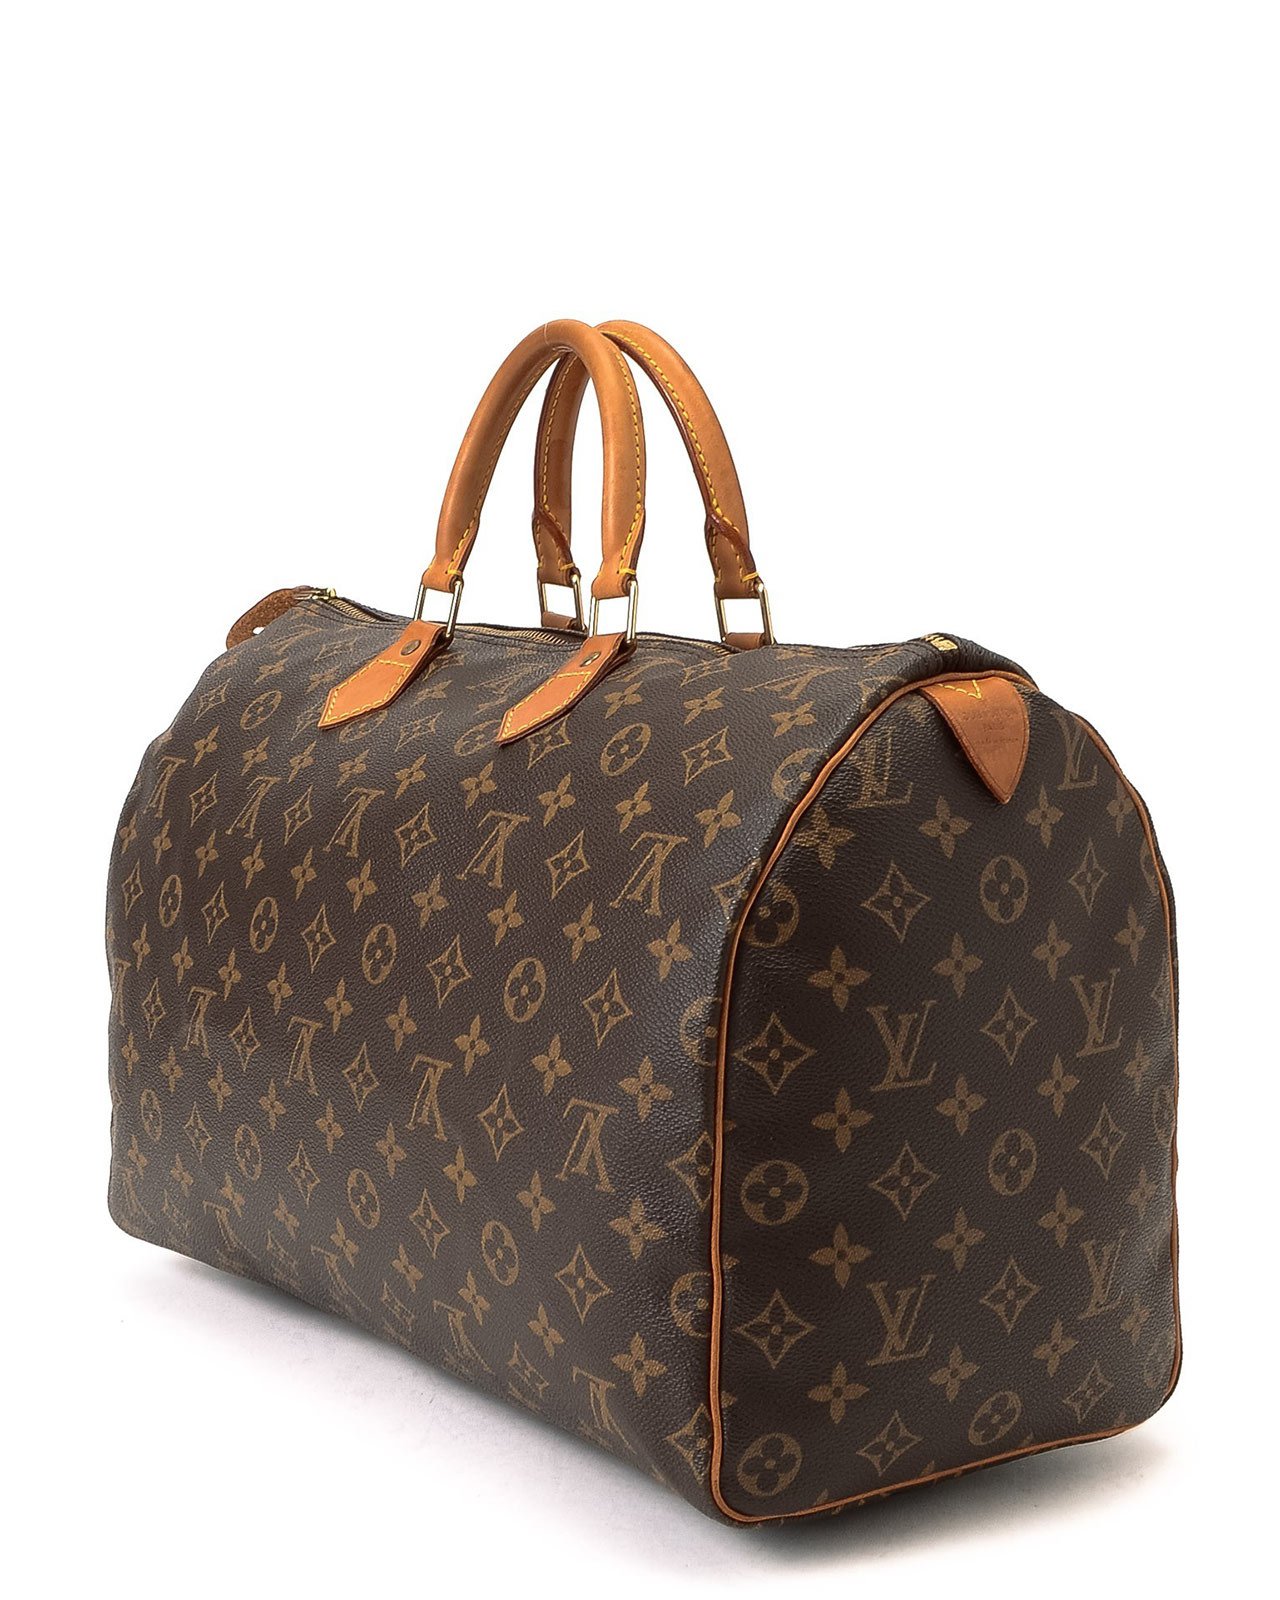 Lyst - Louis Vuitton Speedy 40 Handbag in Brown